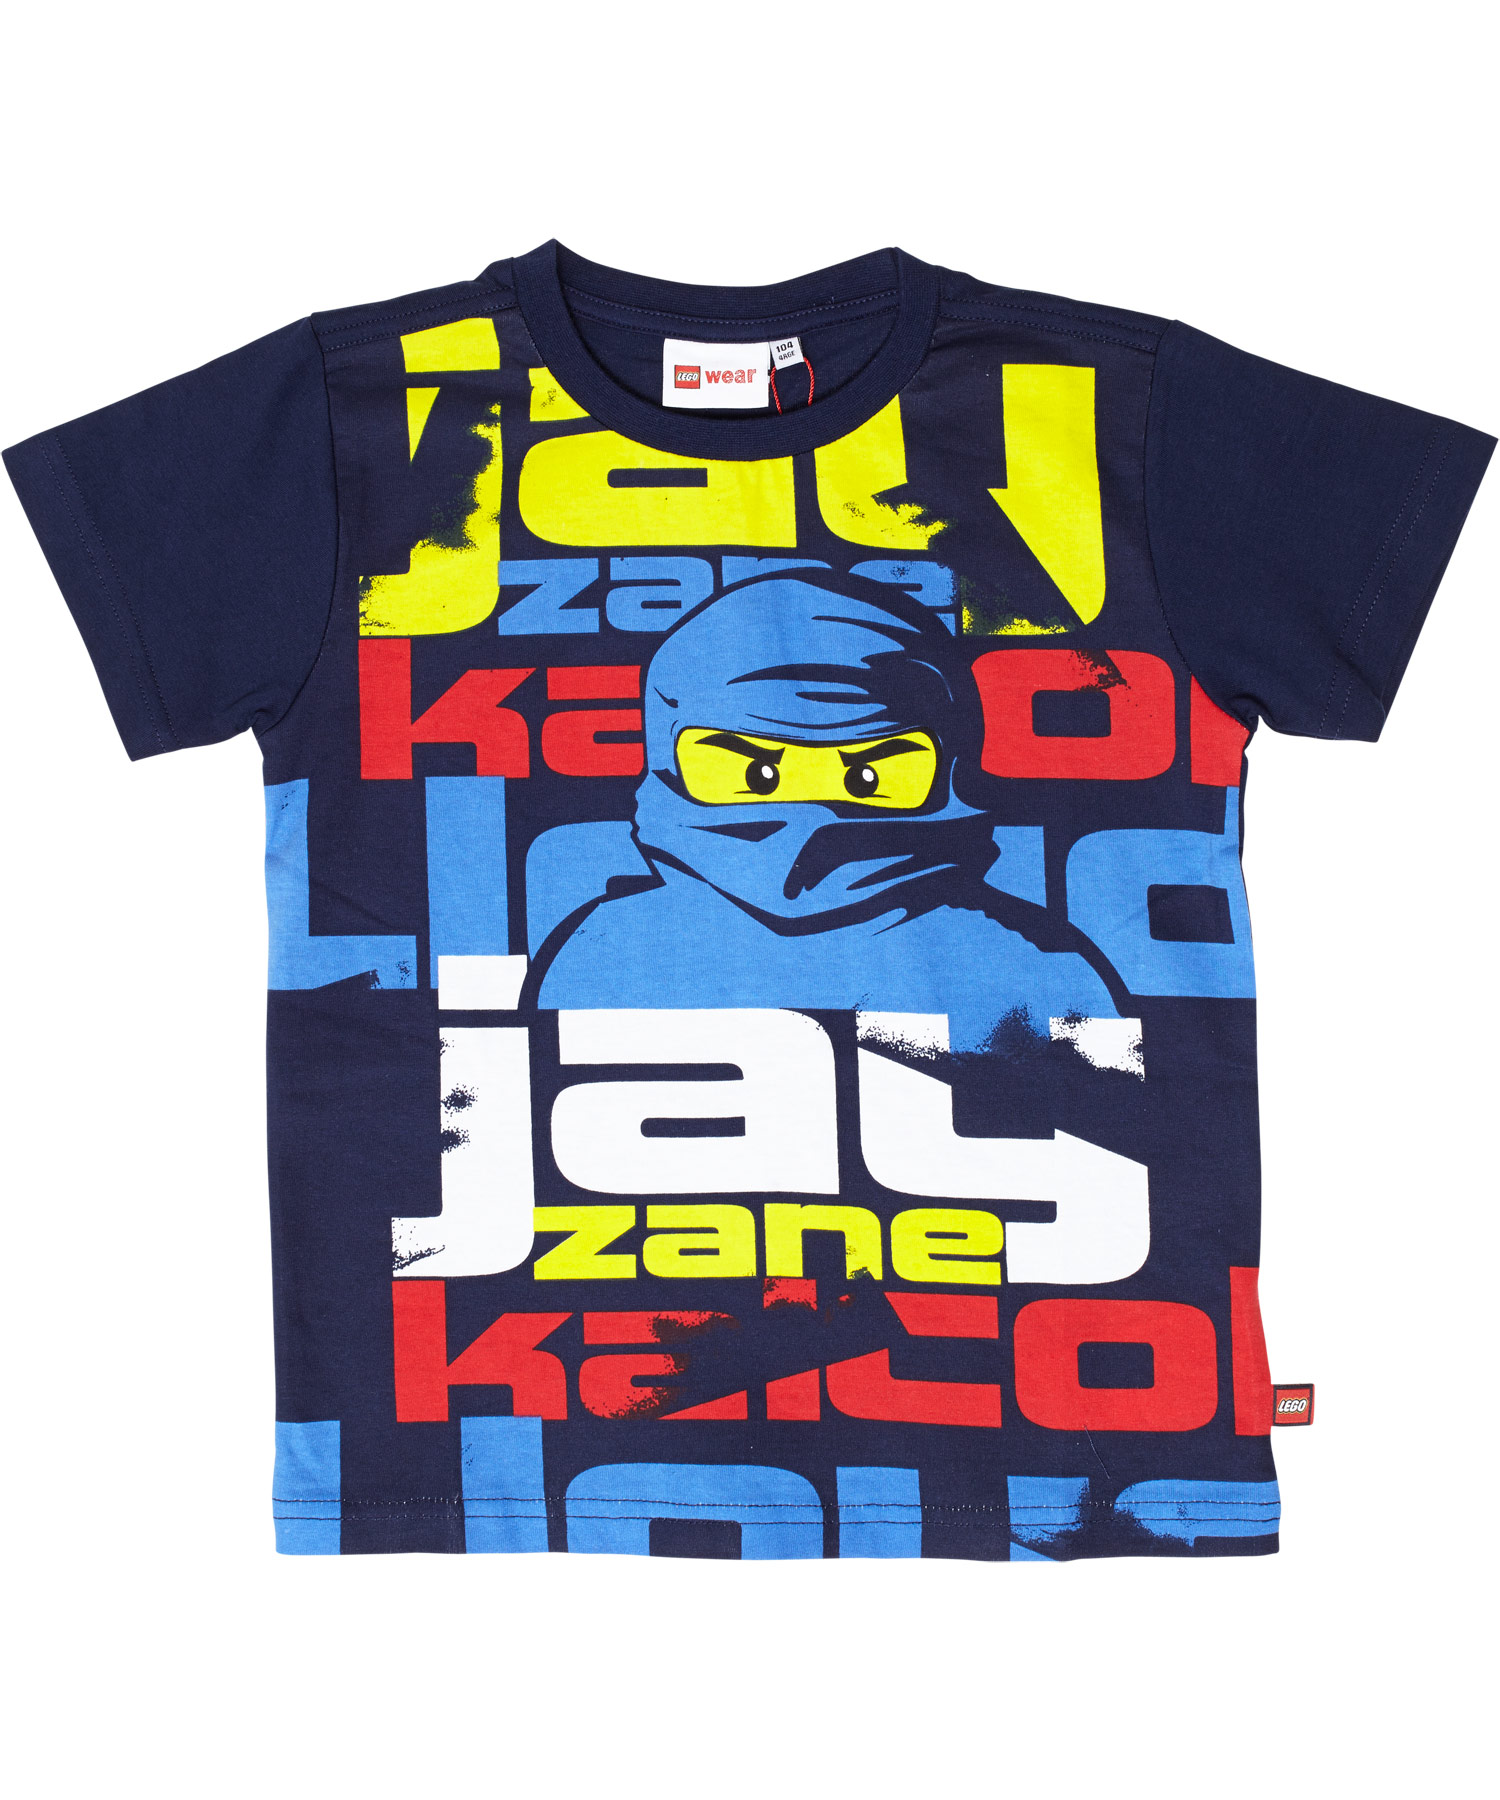 New! LEGO navy Ninjago t-shirt with Jay, the blue ninja